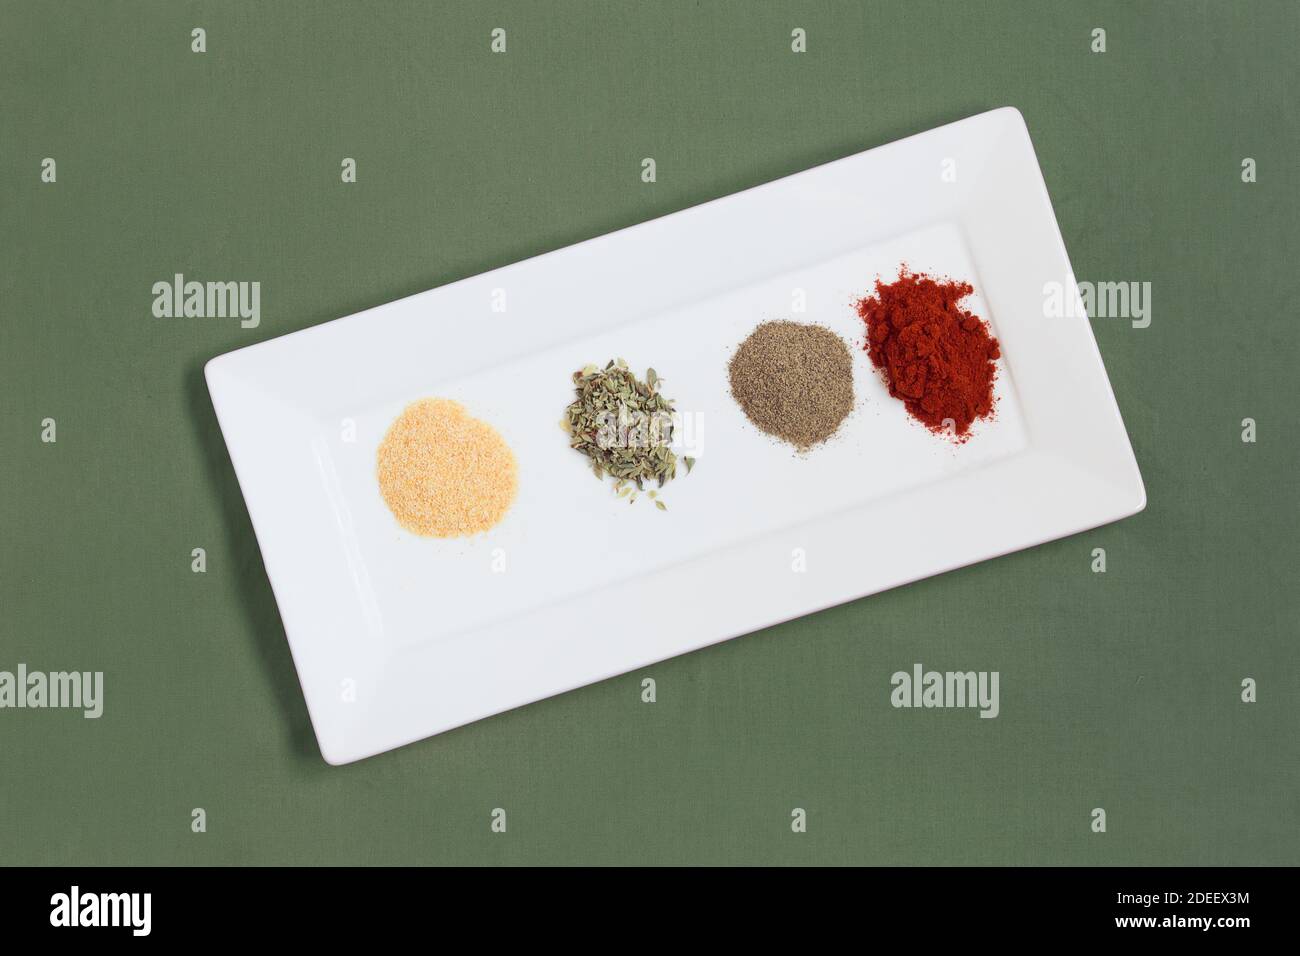 Una variedad de coloridas especias secas y en polvo en una bandeja blanca sobre una mesa con mantel de tela verde. Alimentos saludables y veganos. Foto de stock